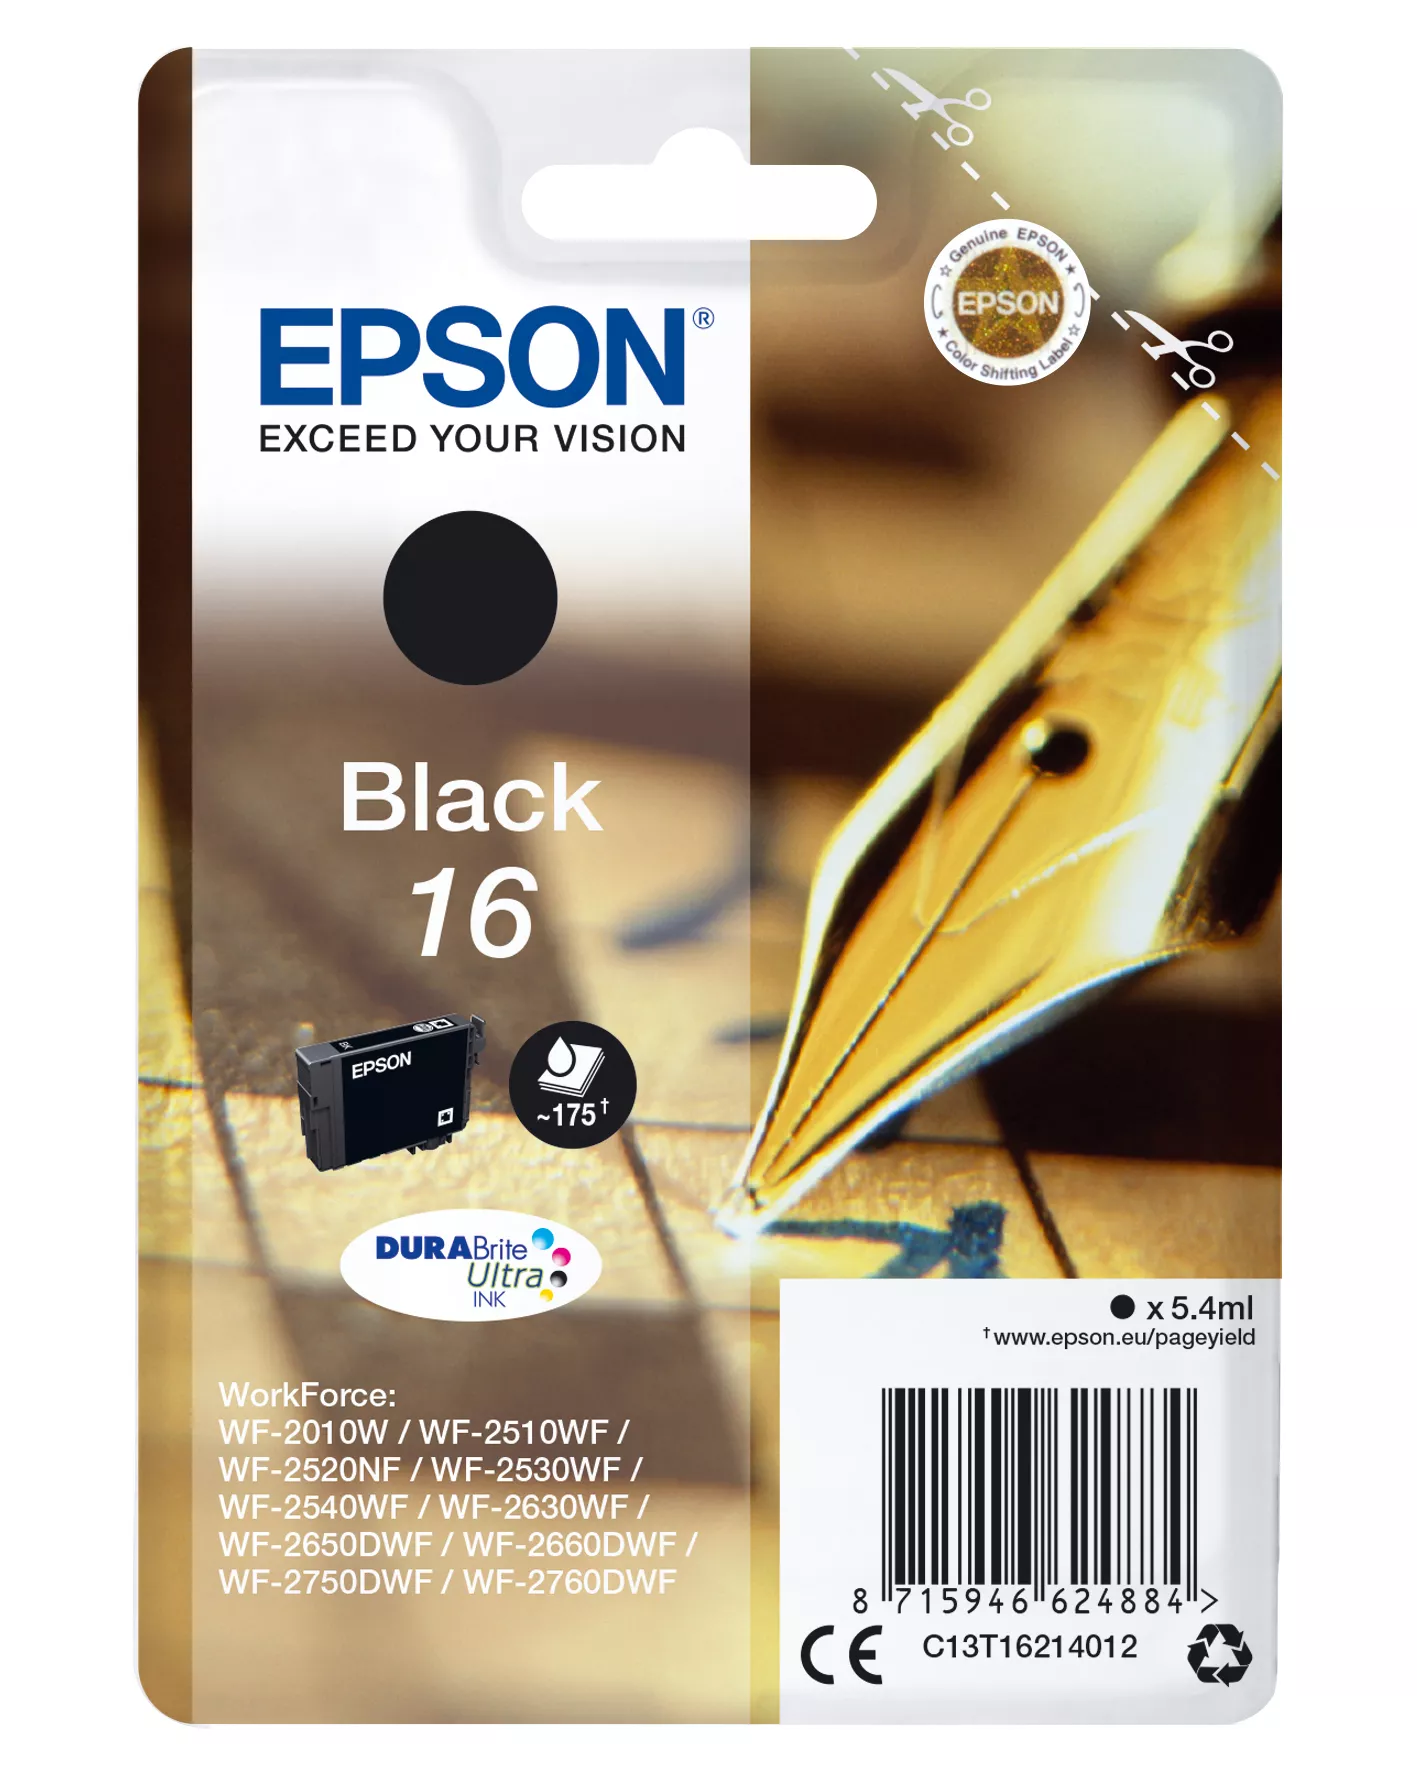 Vente EPSON 16 cartouche encre noir capacité standard 5.4ml 175 au meilleur prix